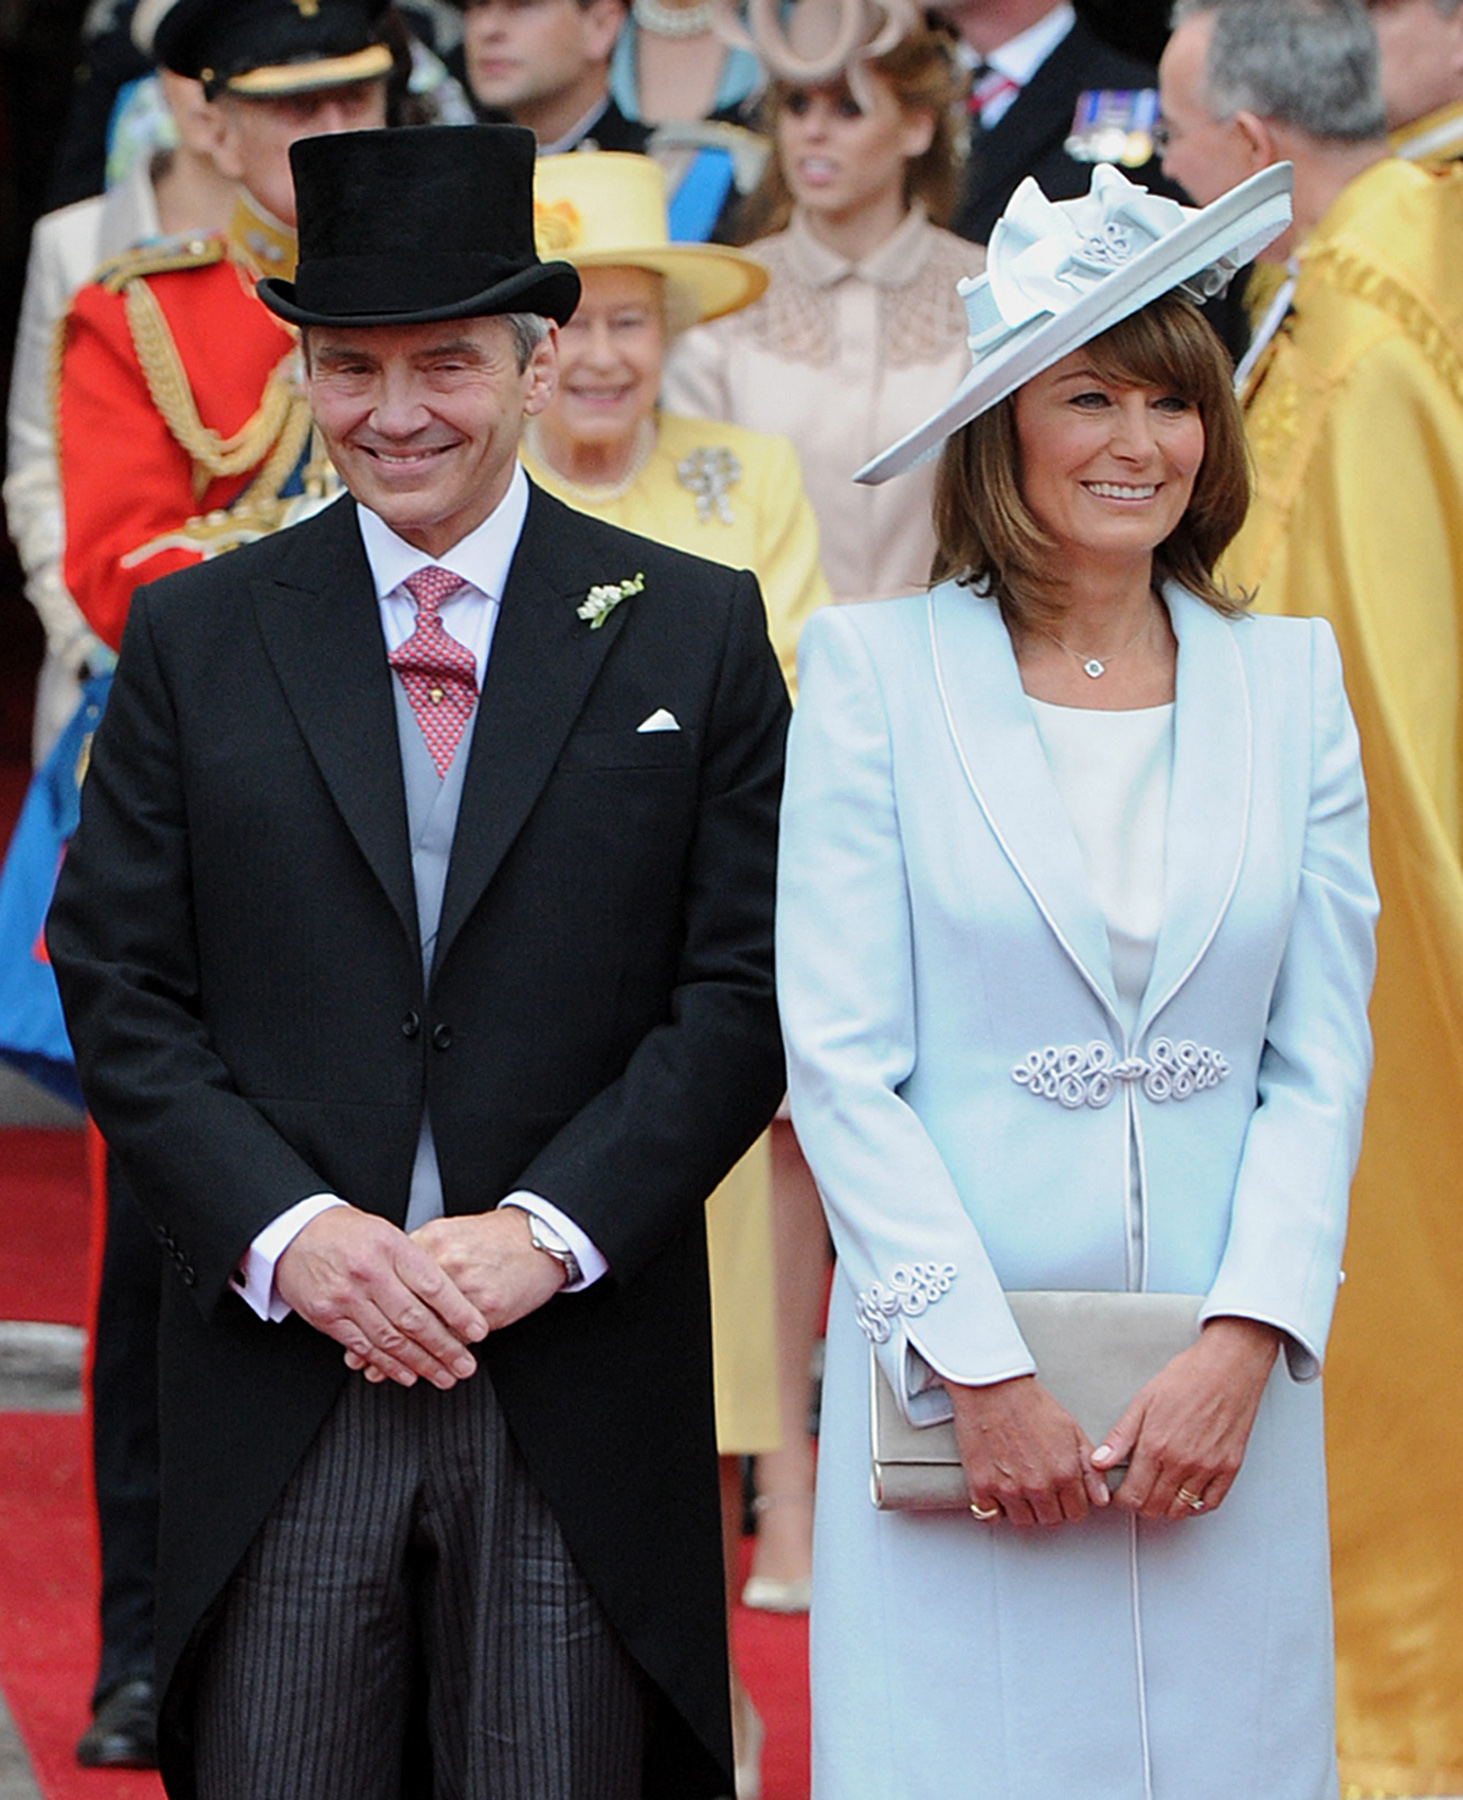 Michael Middleton et Carole Middleton au mariage du prince et de la princesse de Galles à Londres en 2011 | Source : Getty Images